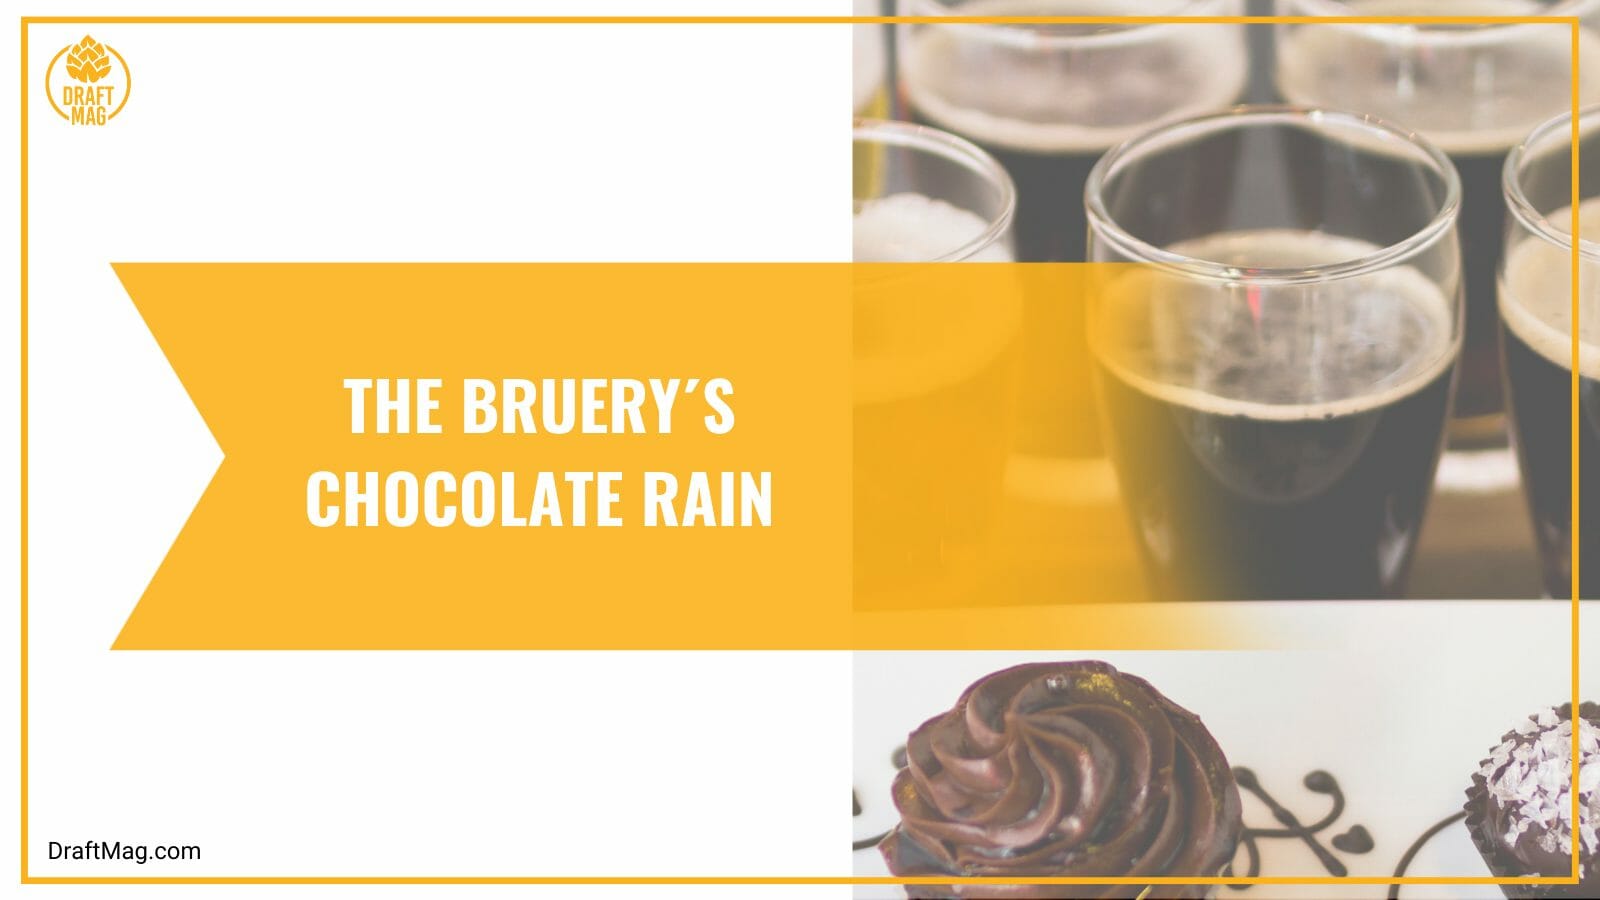 The bruery chocolate rain